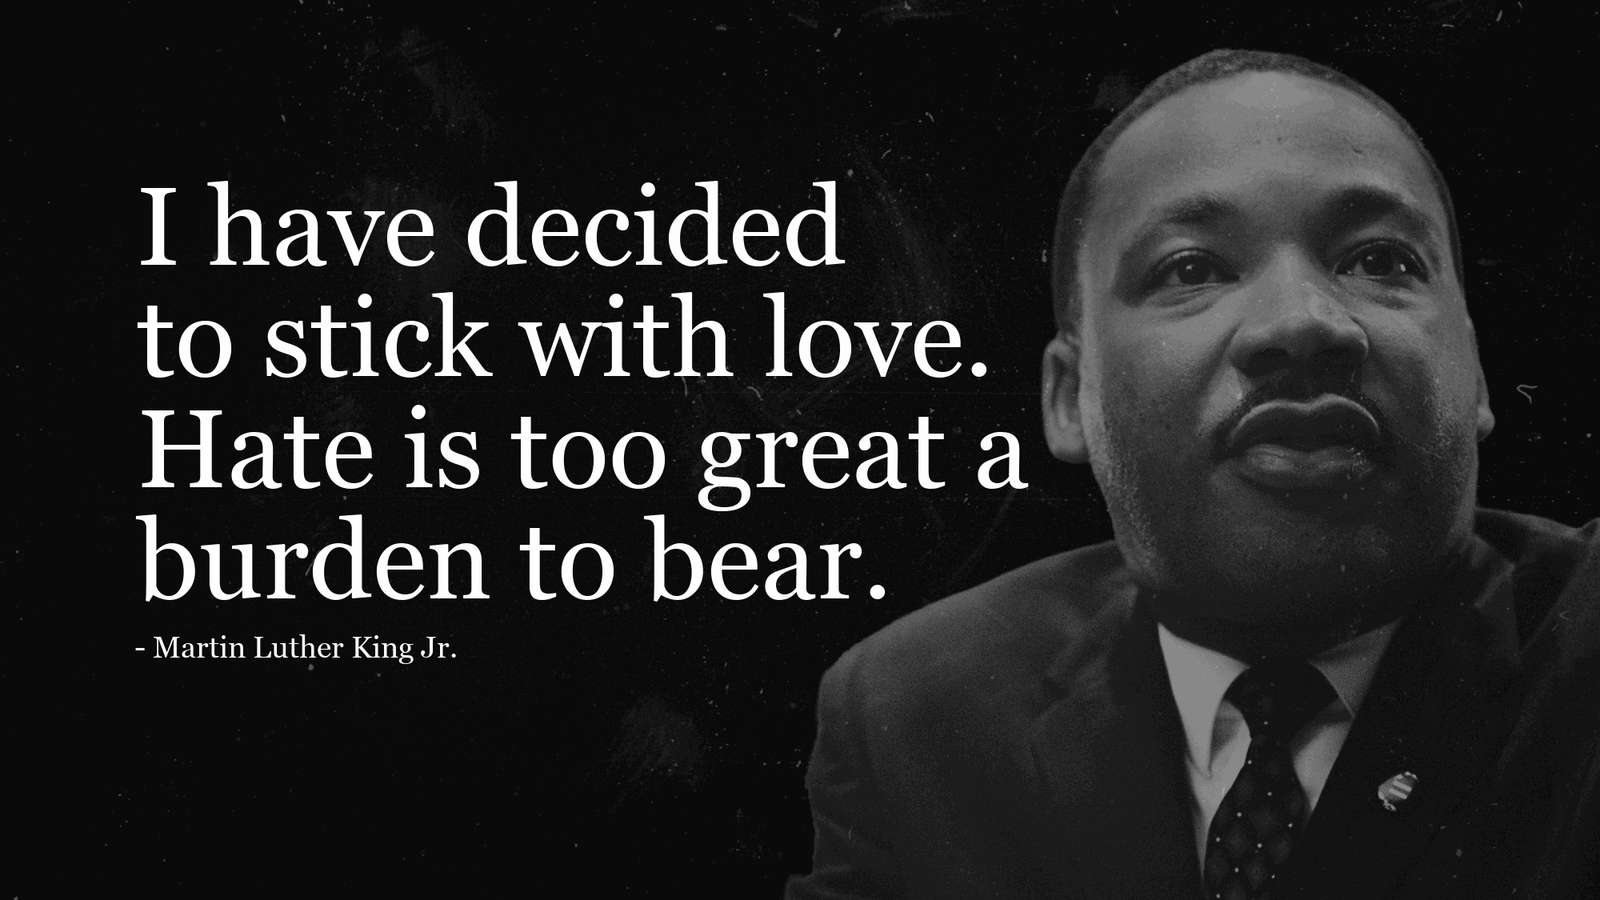 Мартин Лютер Кинг пазл онлайн из фото